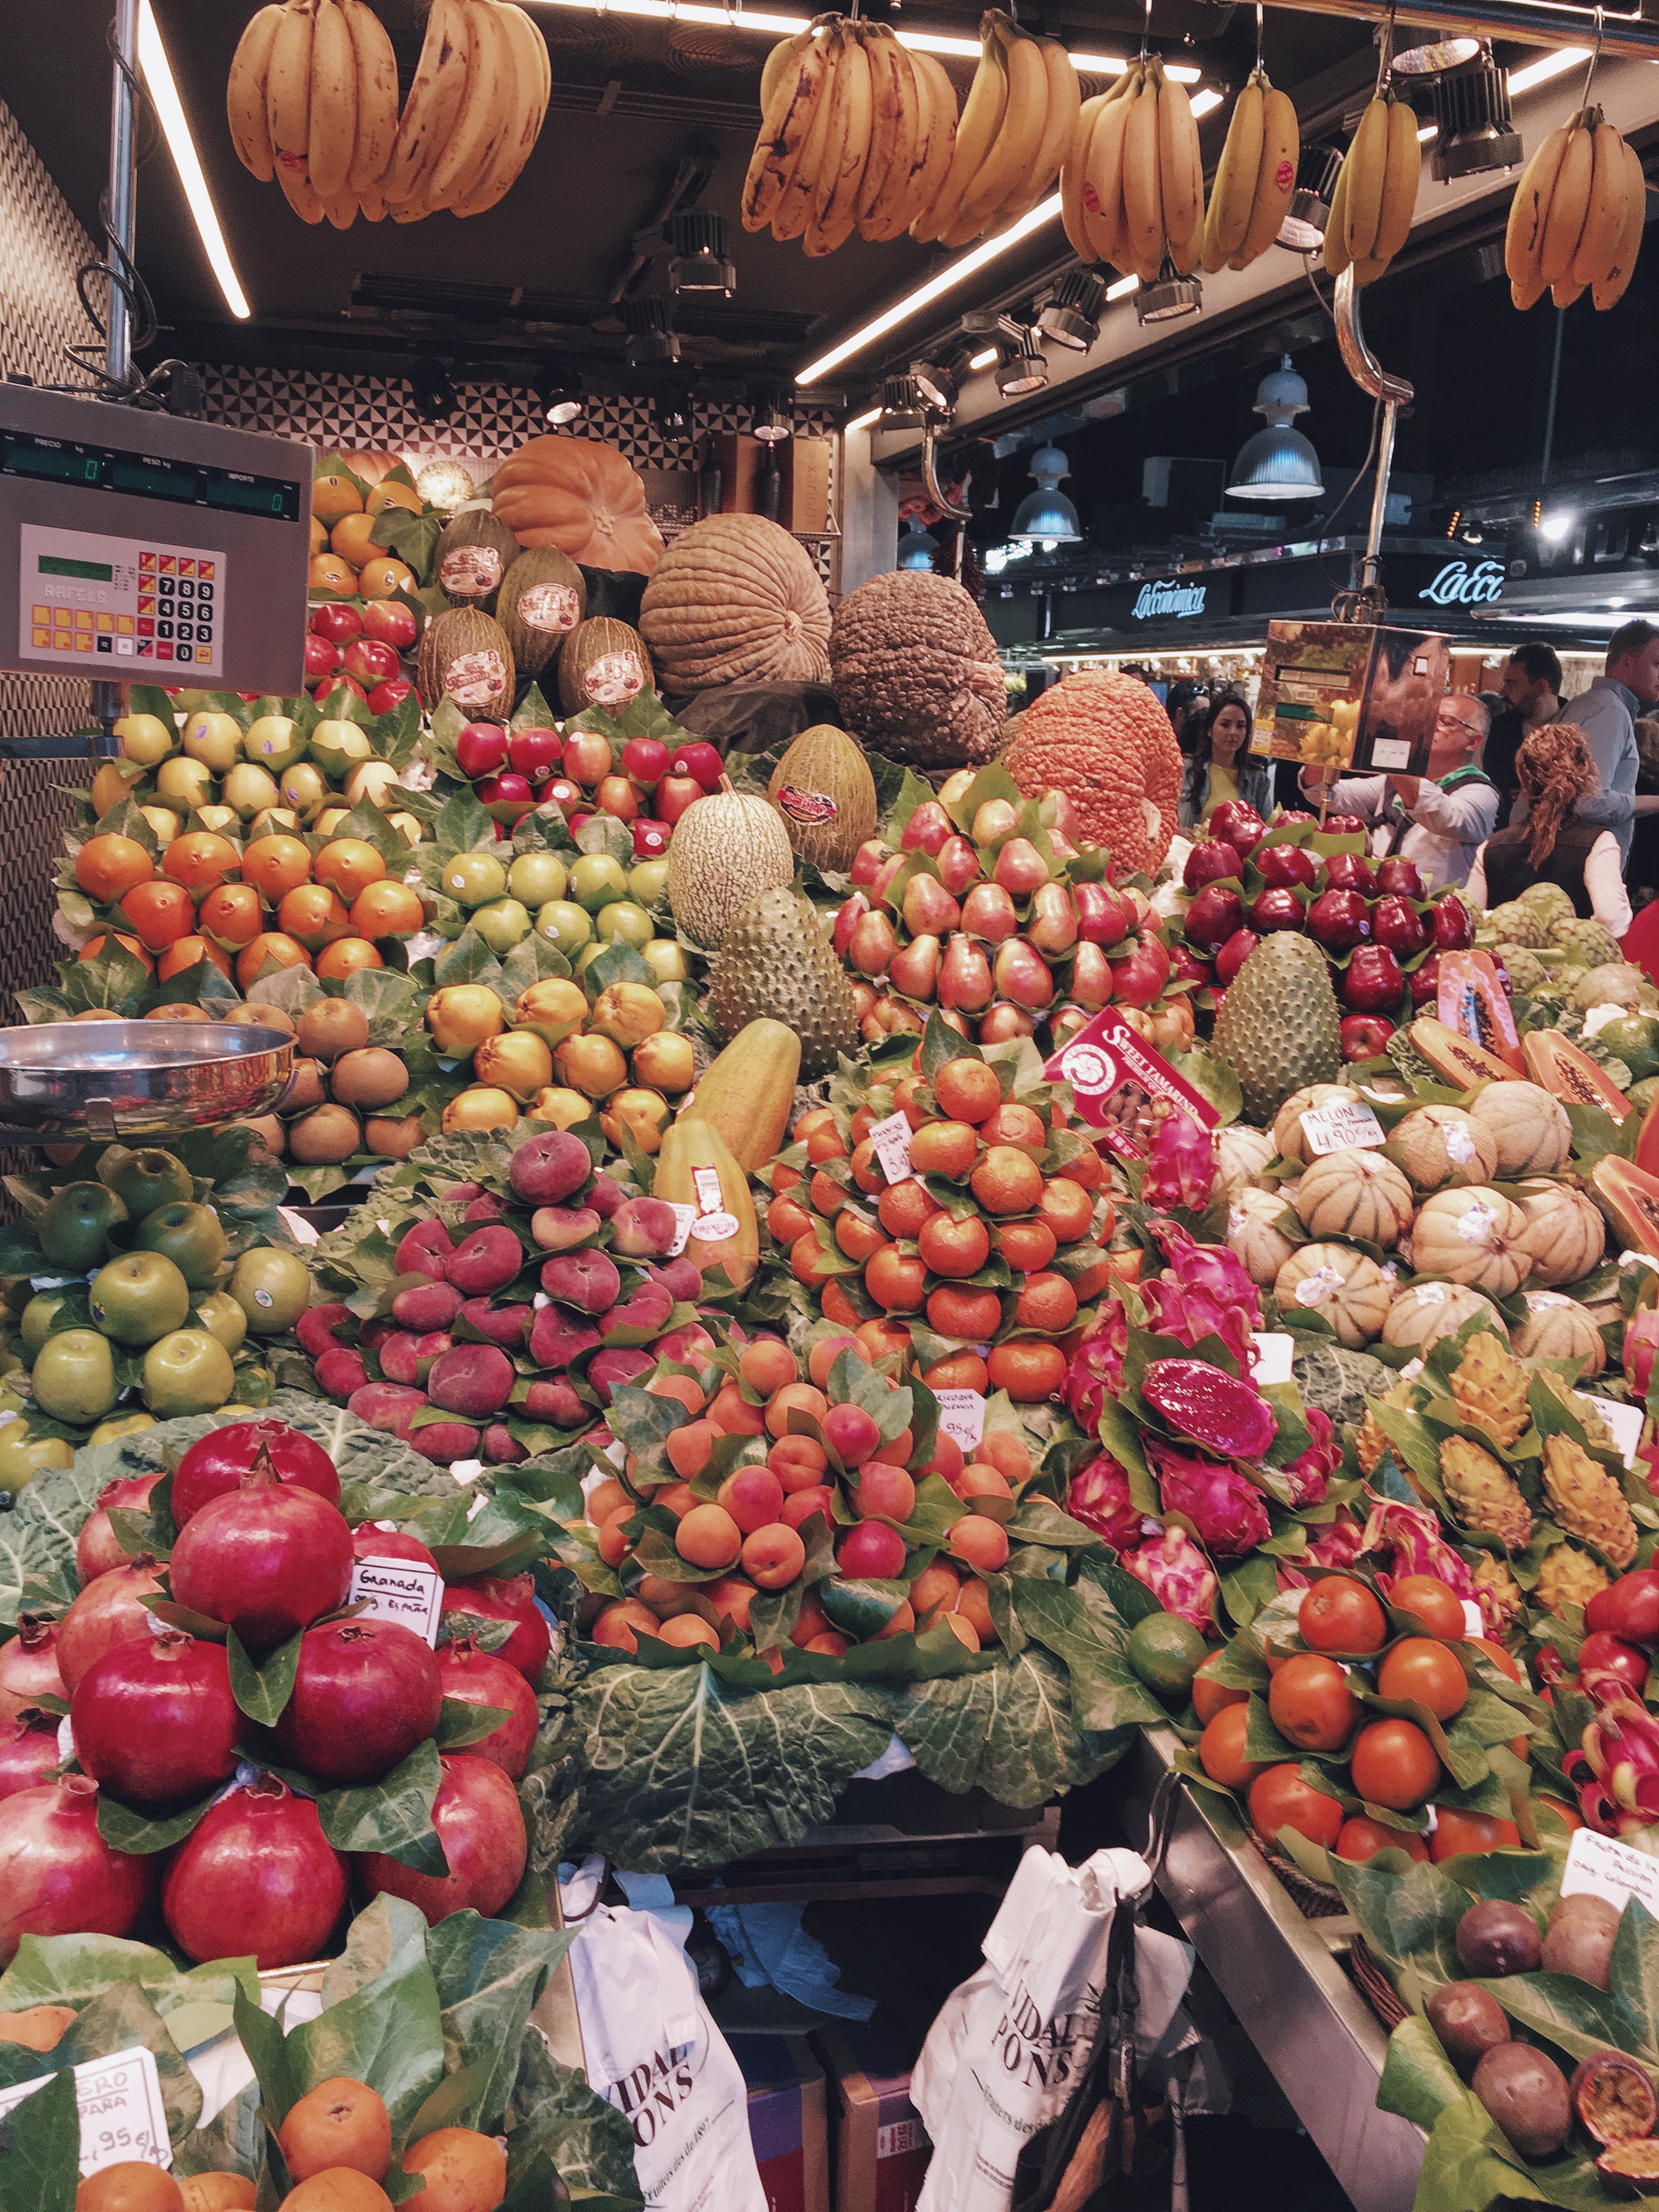 Owoce na bazarze "La Boqueria" w Barcelonie.